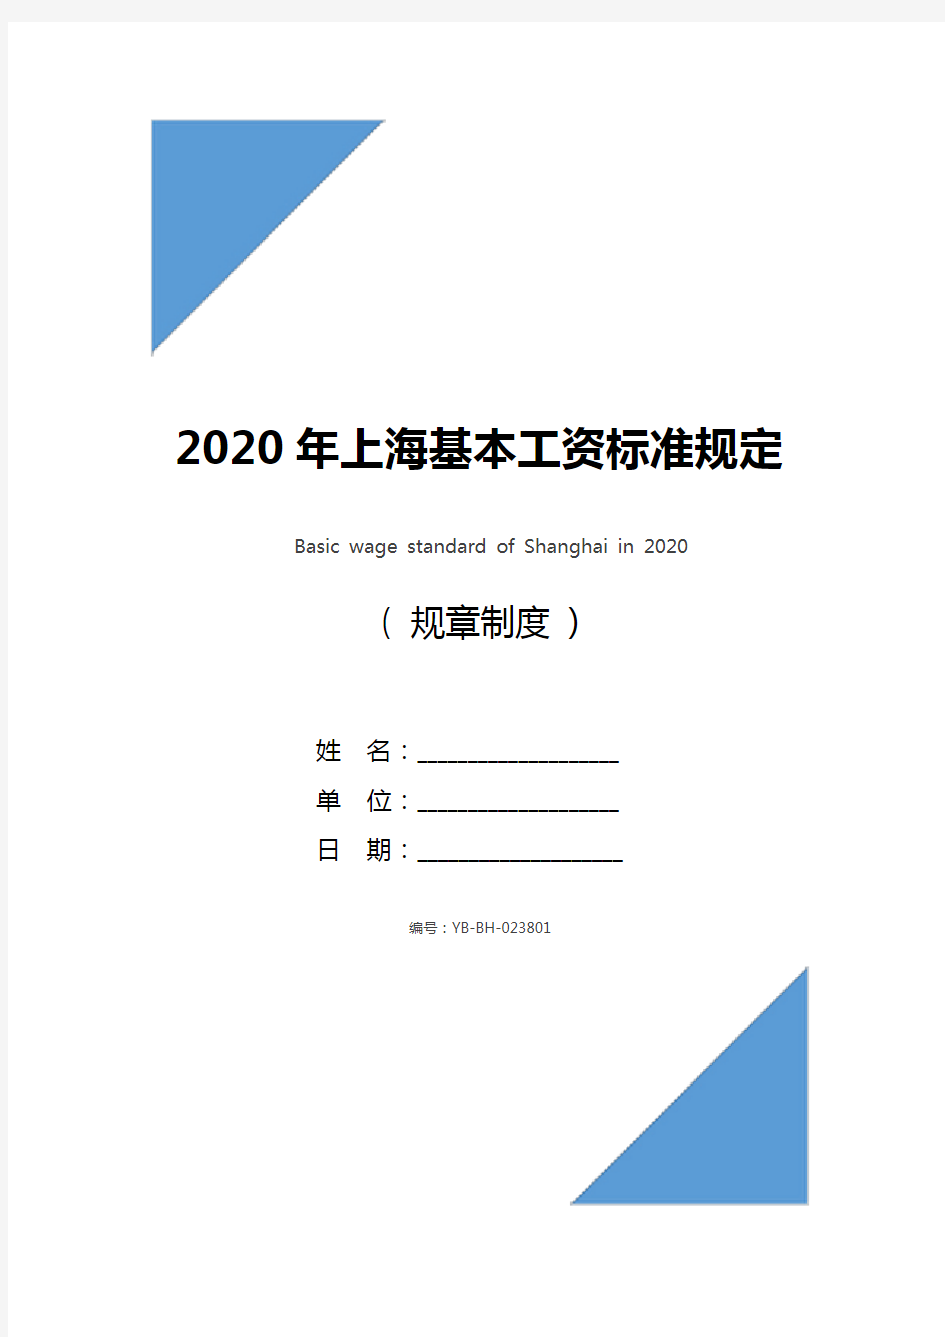 2020年上海基本工资标准规定